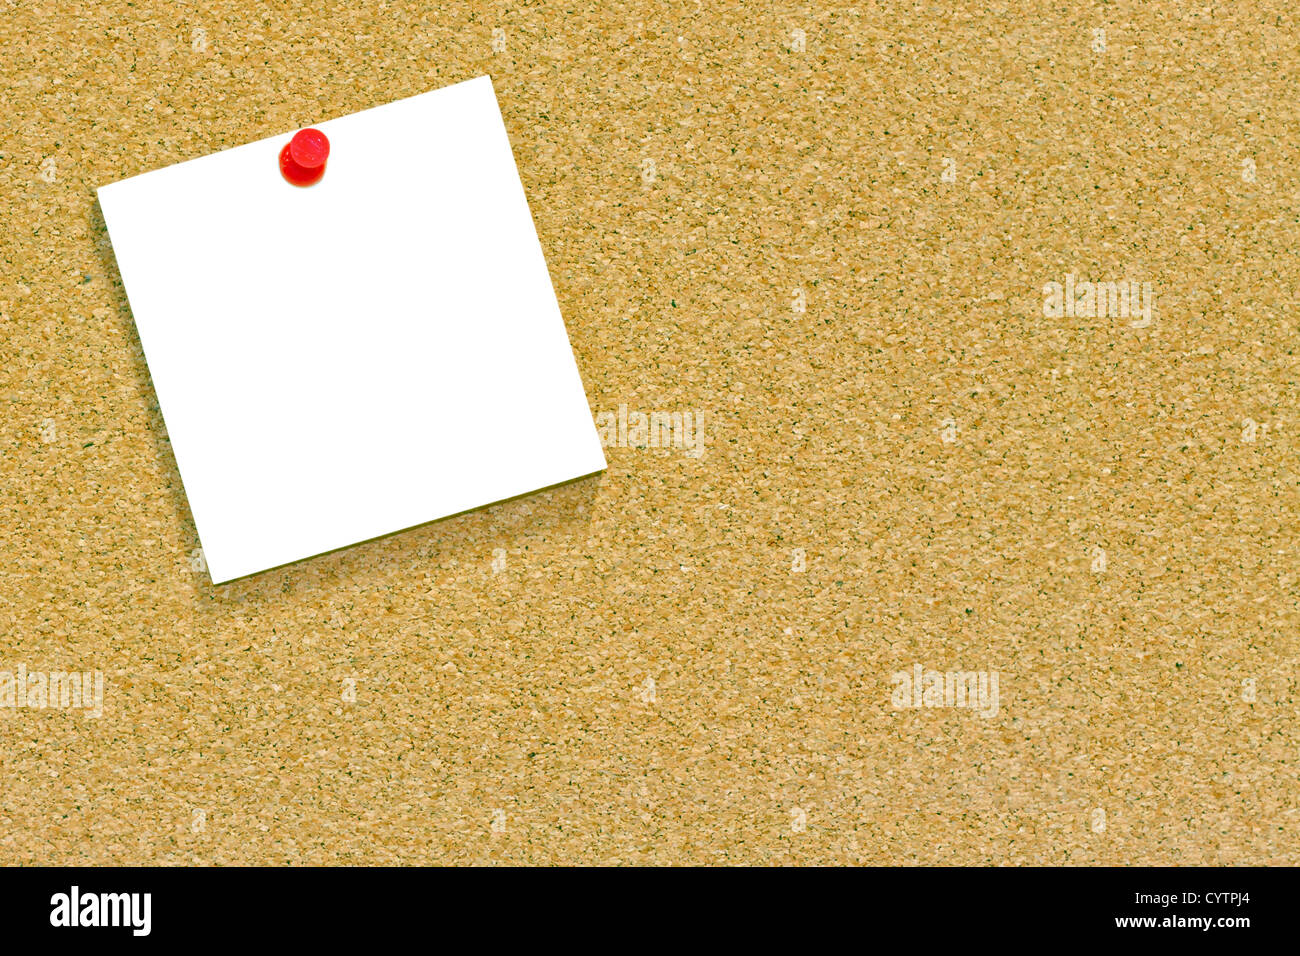 Ein leeres Memo oder Notiz angeheftet, eine Kork-Pinnwand mit Exemplar. Stockfoto